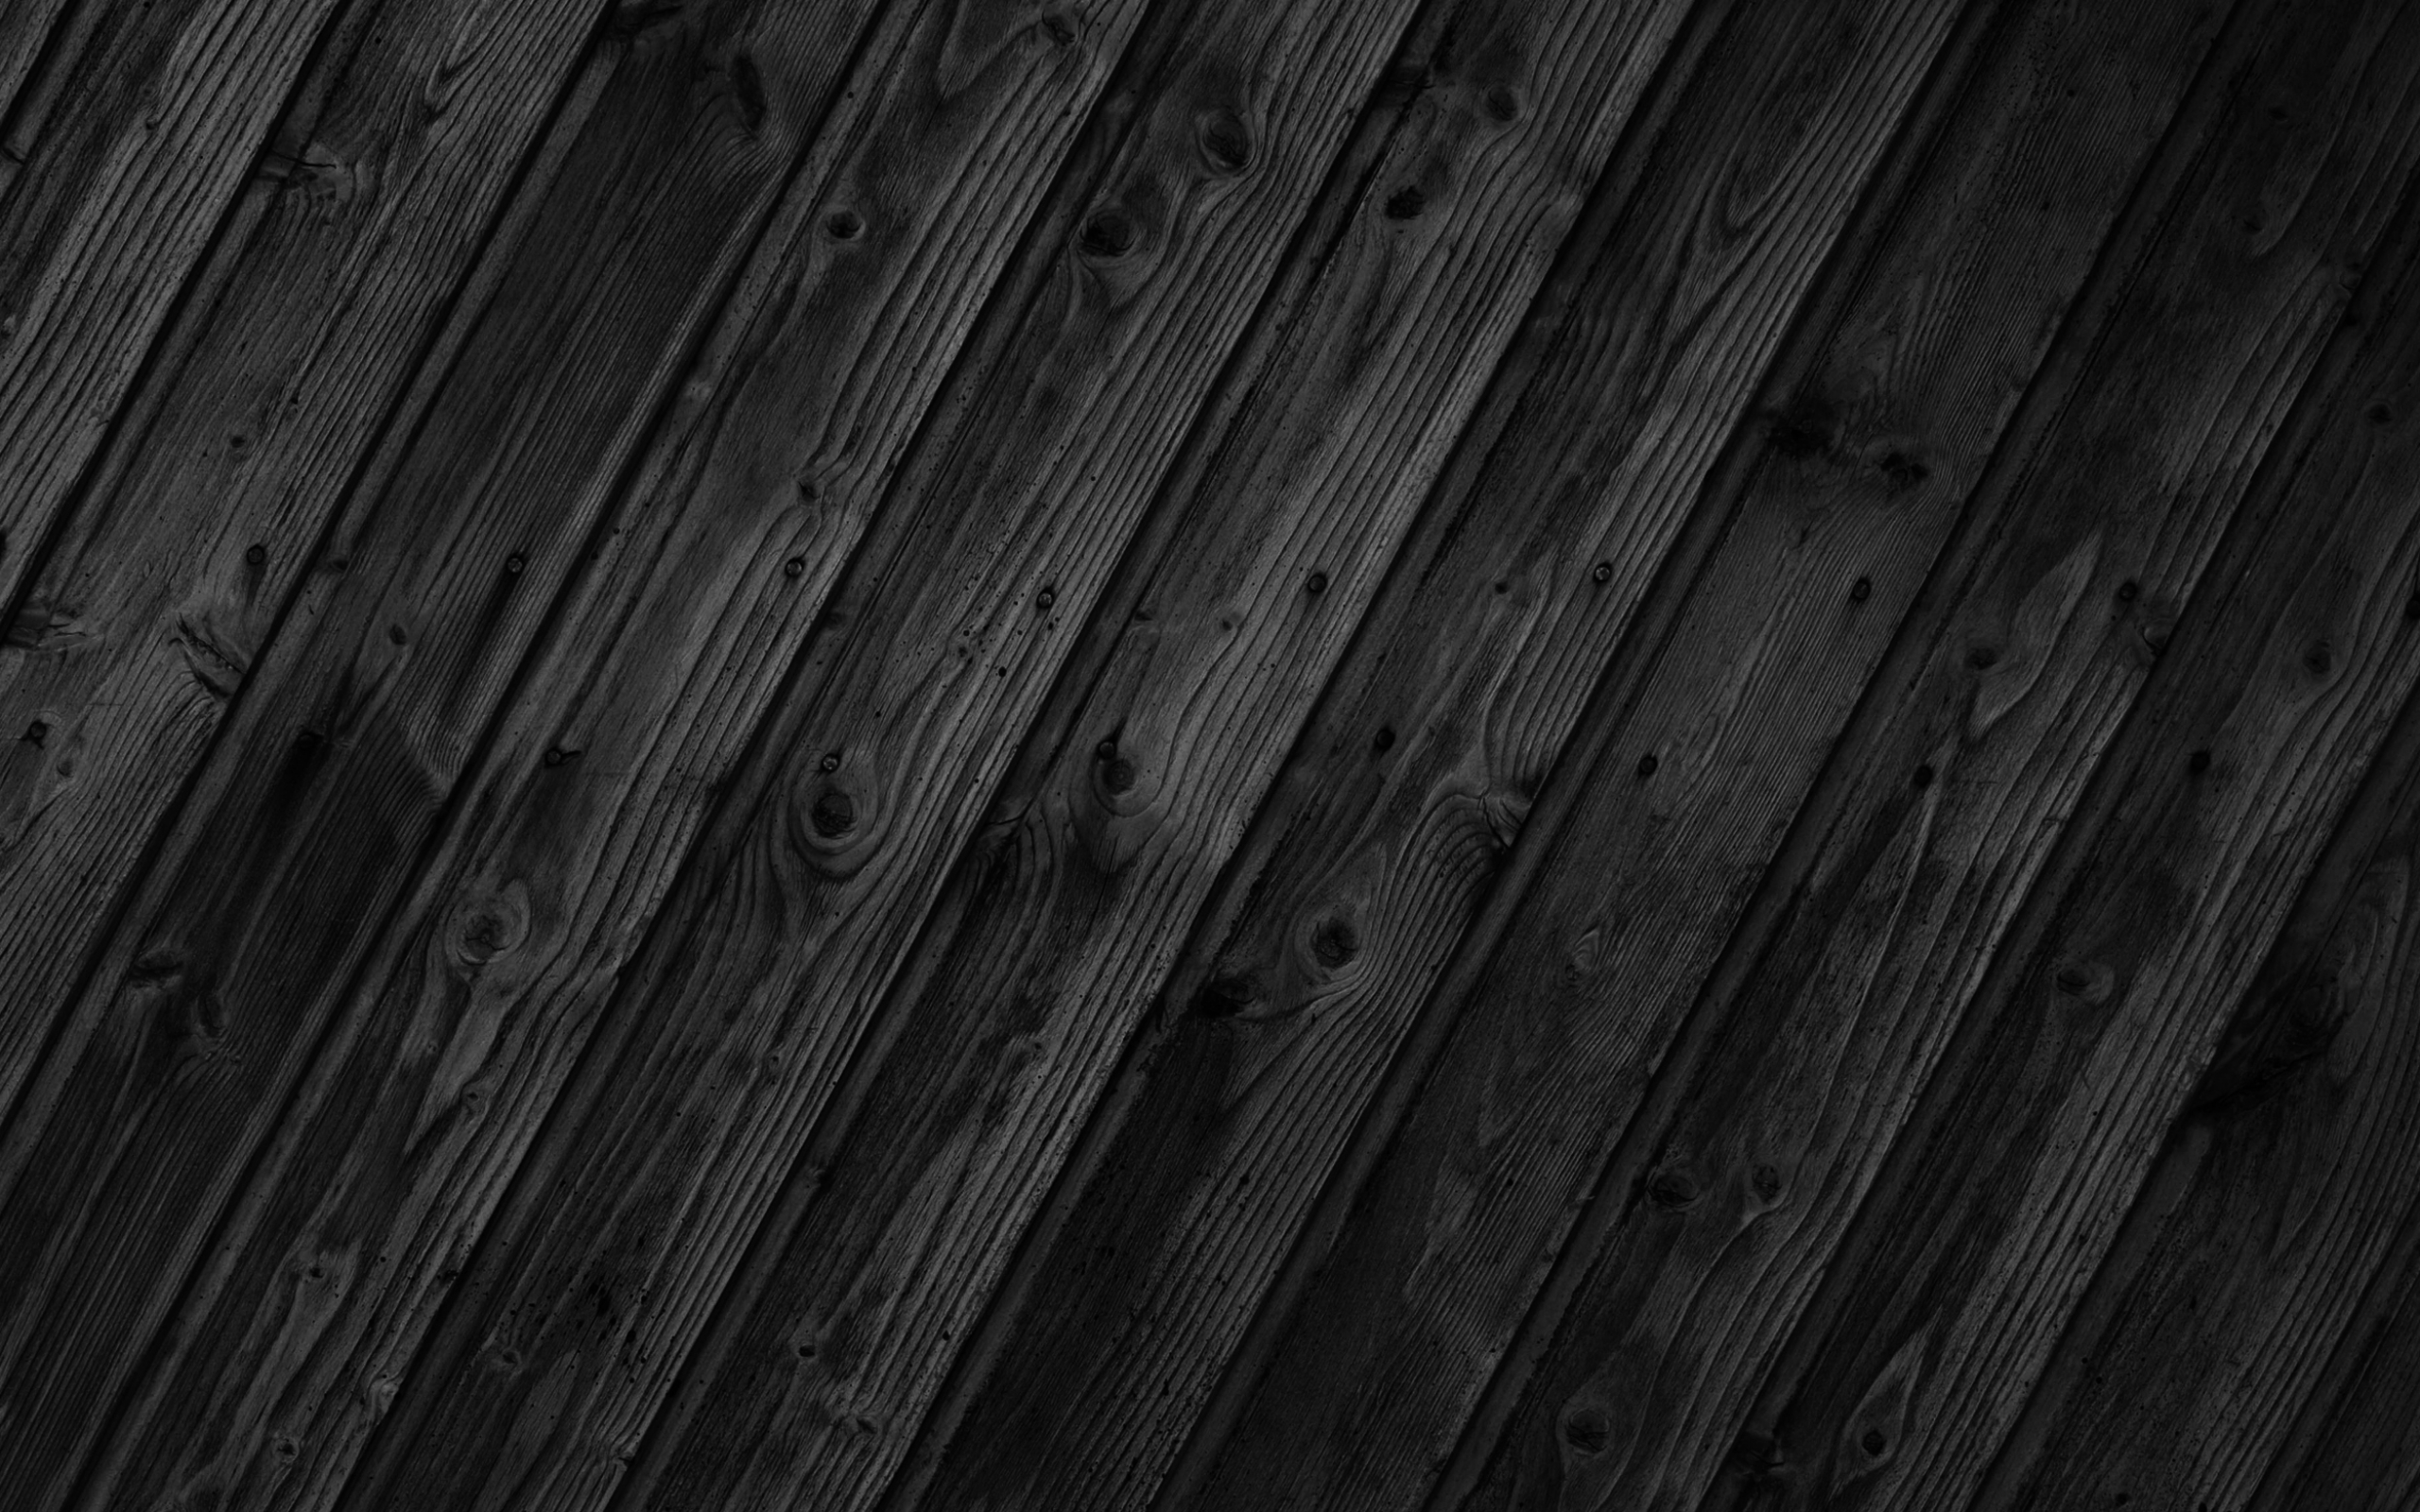 Mẫu gỗ đen là lựa chọn lý tưởng cho những ai muốn tạo được một sự khác biệt trong không gian nội thất của mình. Khi sử dụng mẫu gỗ đen, bạn sẽ cảm nhận được vẻ đẹp tối giản mà vẫn sang trọng của loại gỗ này. Hãy xem hình ảnh để thấy sự rõ nét của mẫu gỗ đen!